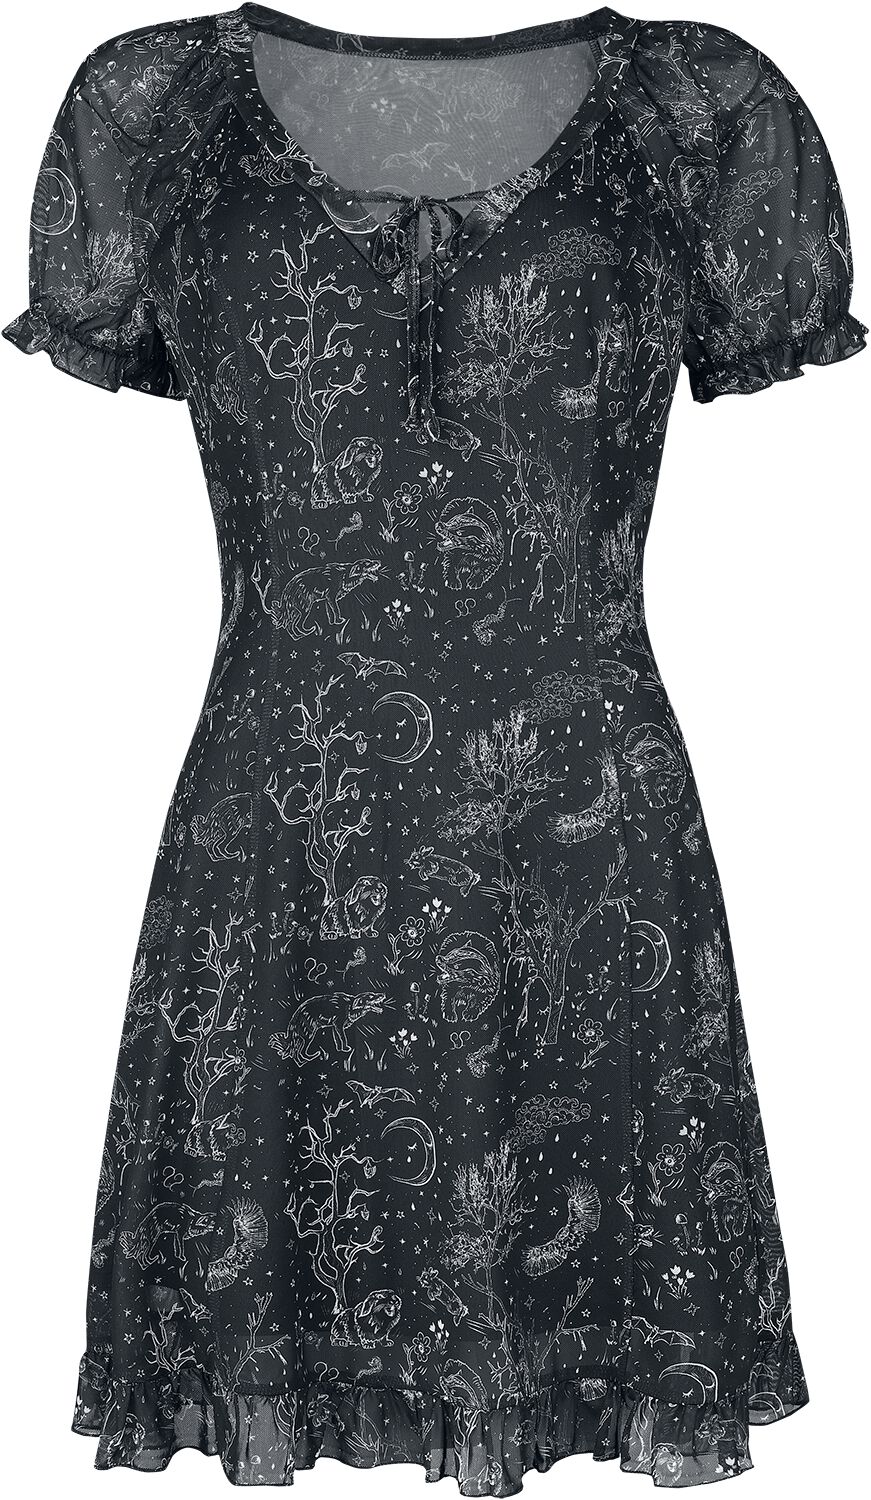 Jawbreaker - Gothic Kurzes Kleid - Night Forest Mesh Dress - XS bis XL - für Damen - Größe S - schwarz/weiß